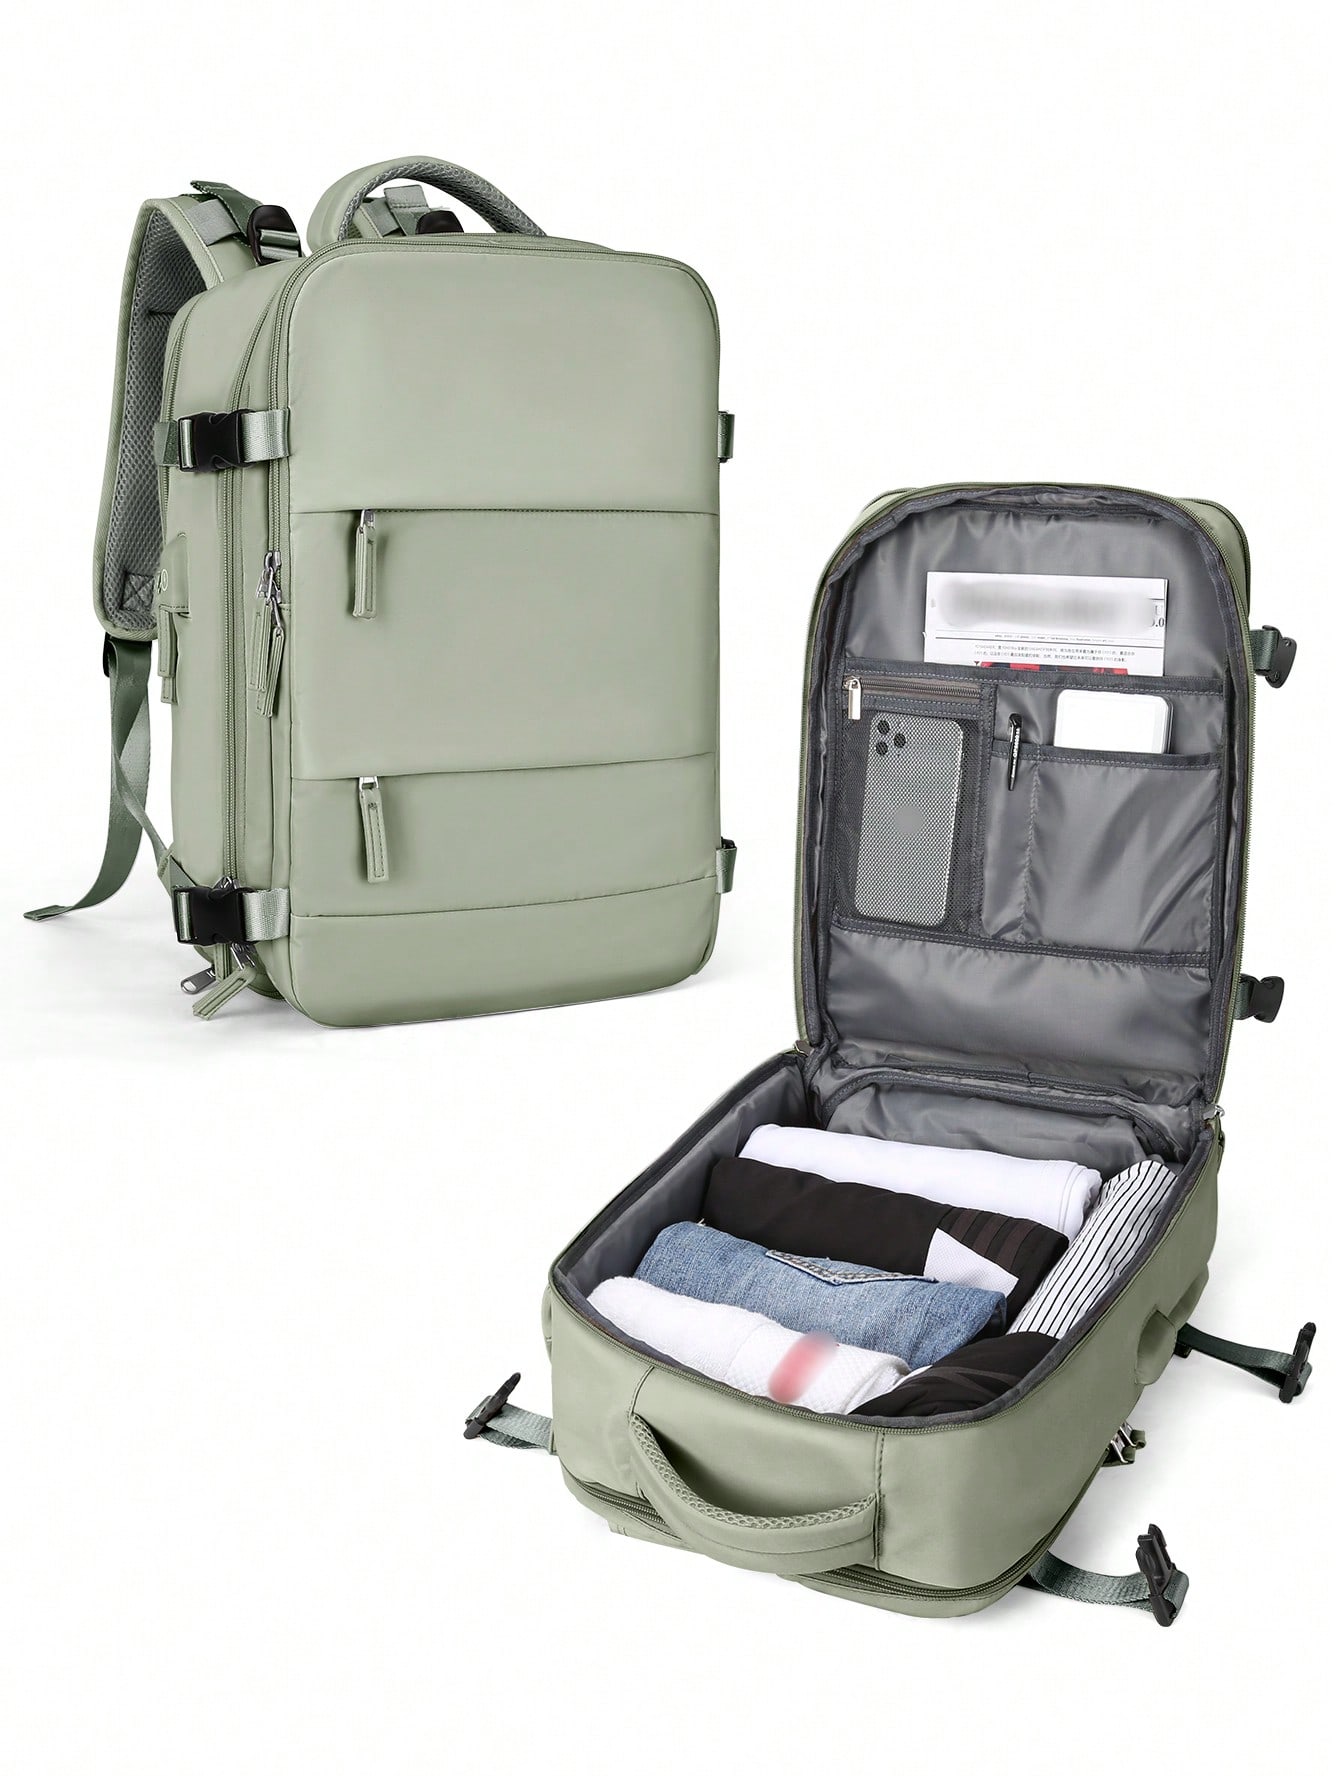 Женский дорожный рюкзак с USB-портом для зарядки, зеленый высококачественный женский рюкзак новинка 2021 модный женский рюкзак вместительная дорожная сумка из мягкой кожи женская школьная сумка